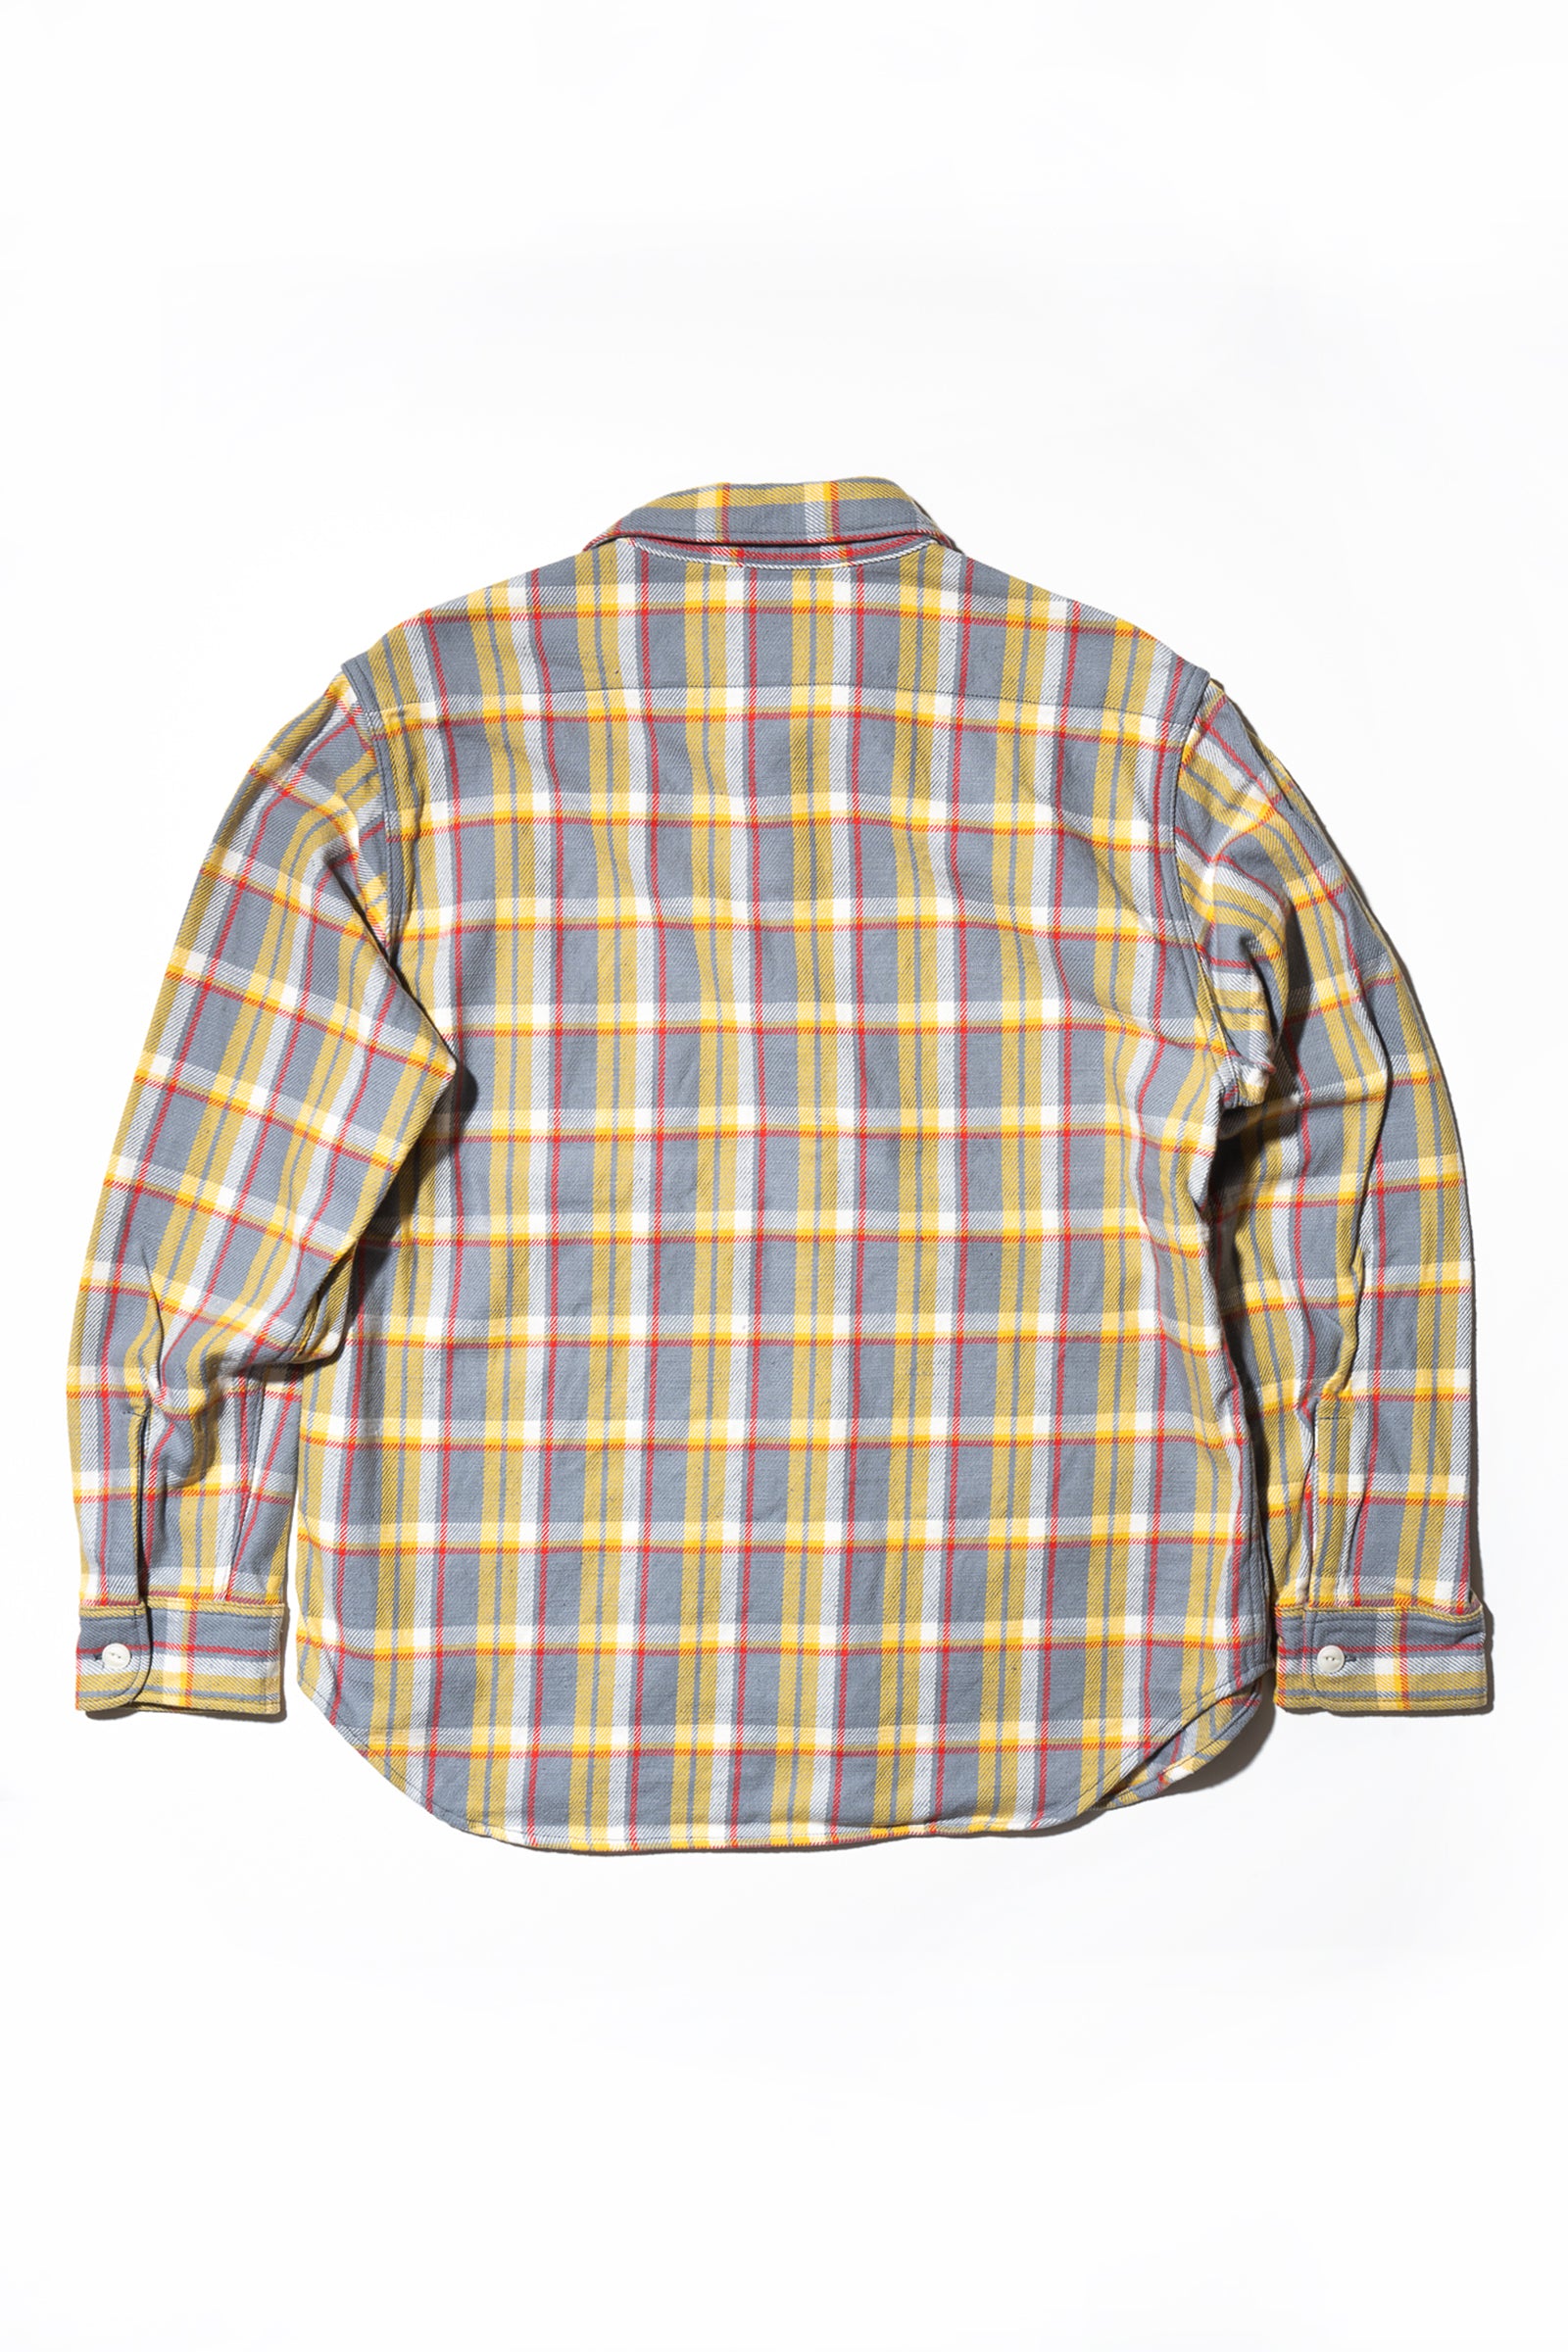 新品 WEIV Woodridge flannel companyシャツ XL